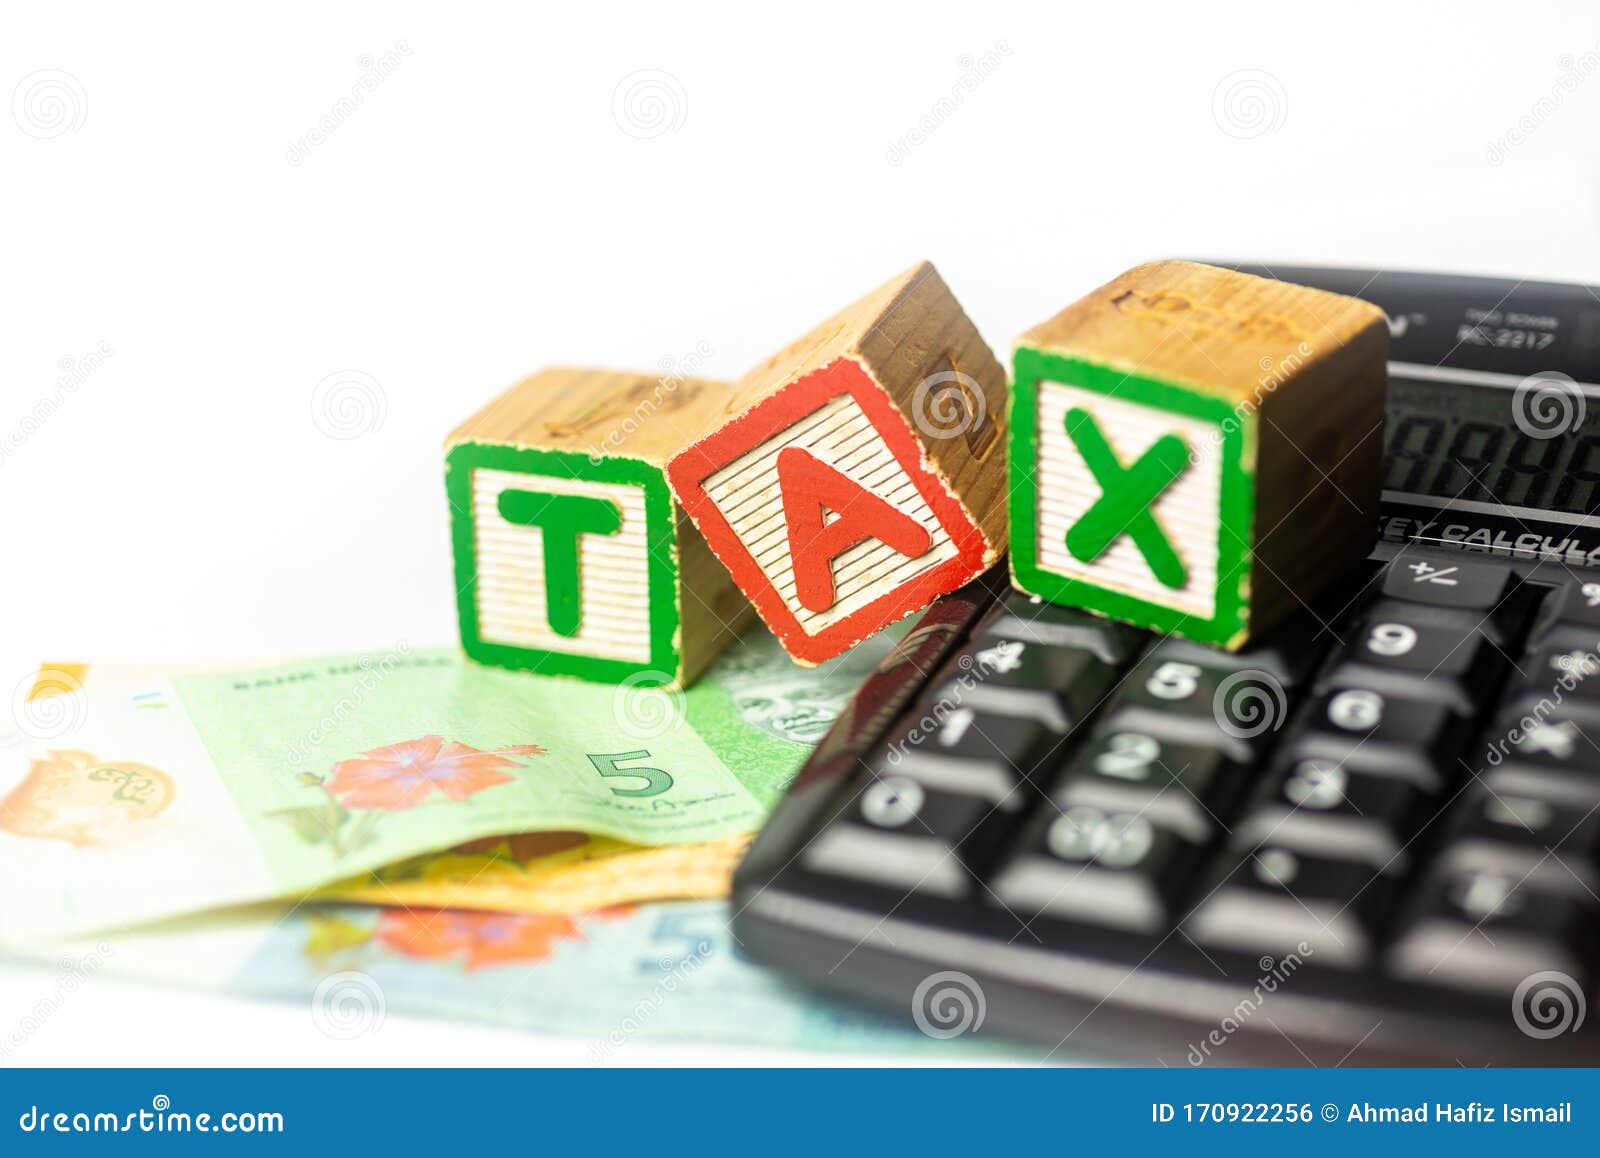 Tax calculator malaysia